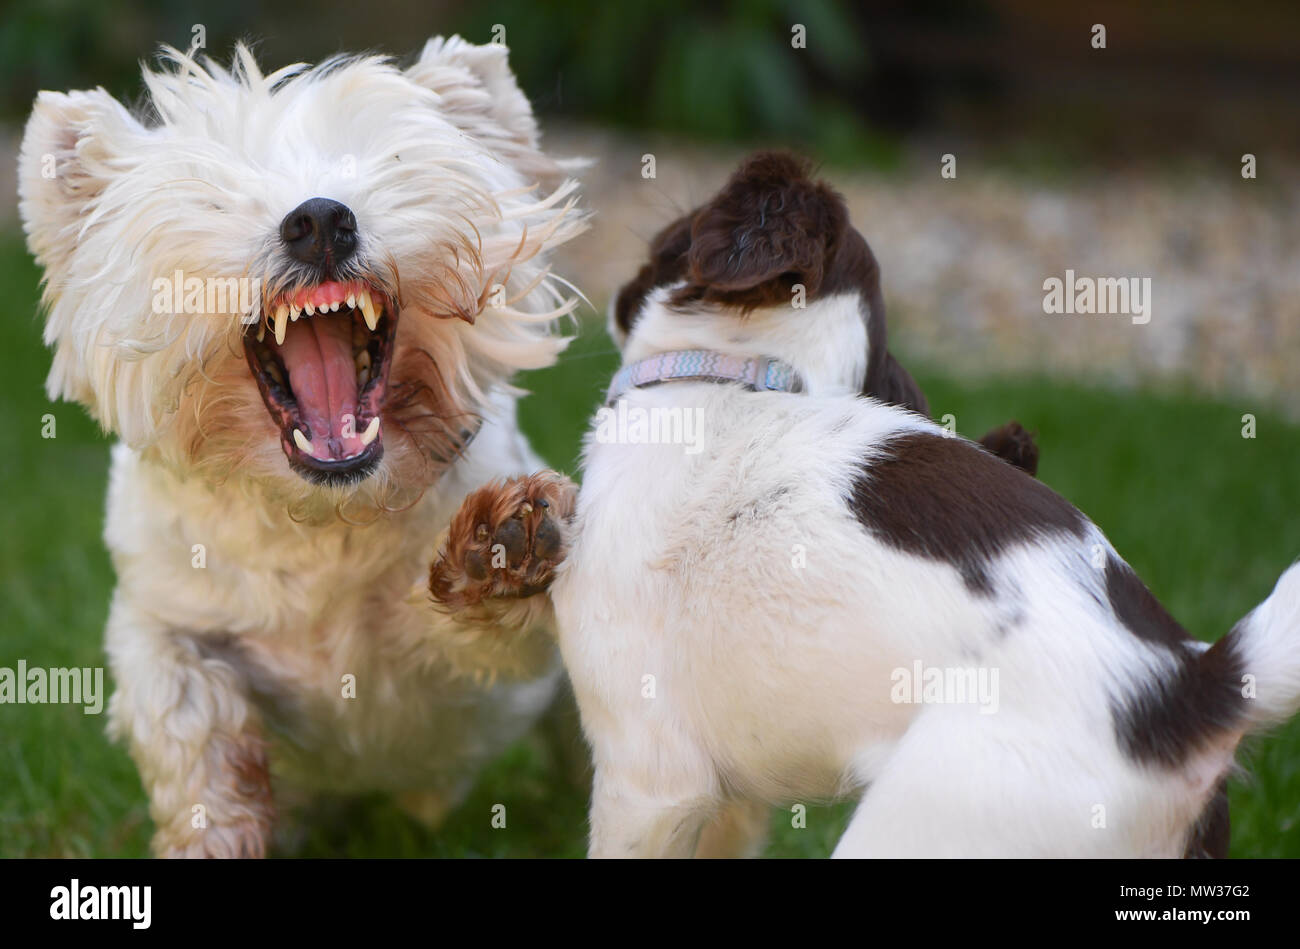 Ein West Highland Terrier obwohl Spielen zeigt seine Zähne in einer Anzeige von Im, der Chef, während es vergesellschaftet mit einem Welpen English Springer Spaniel. Stockfoto